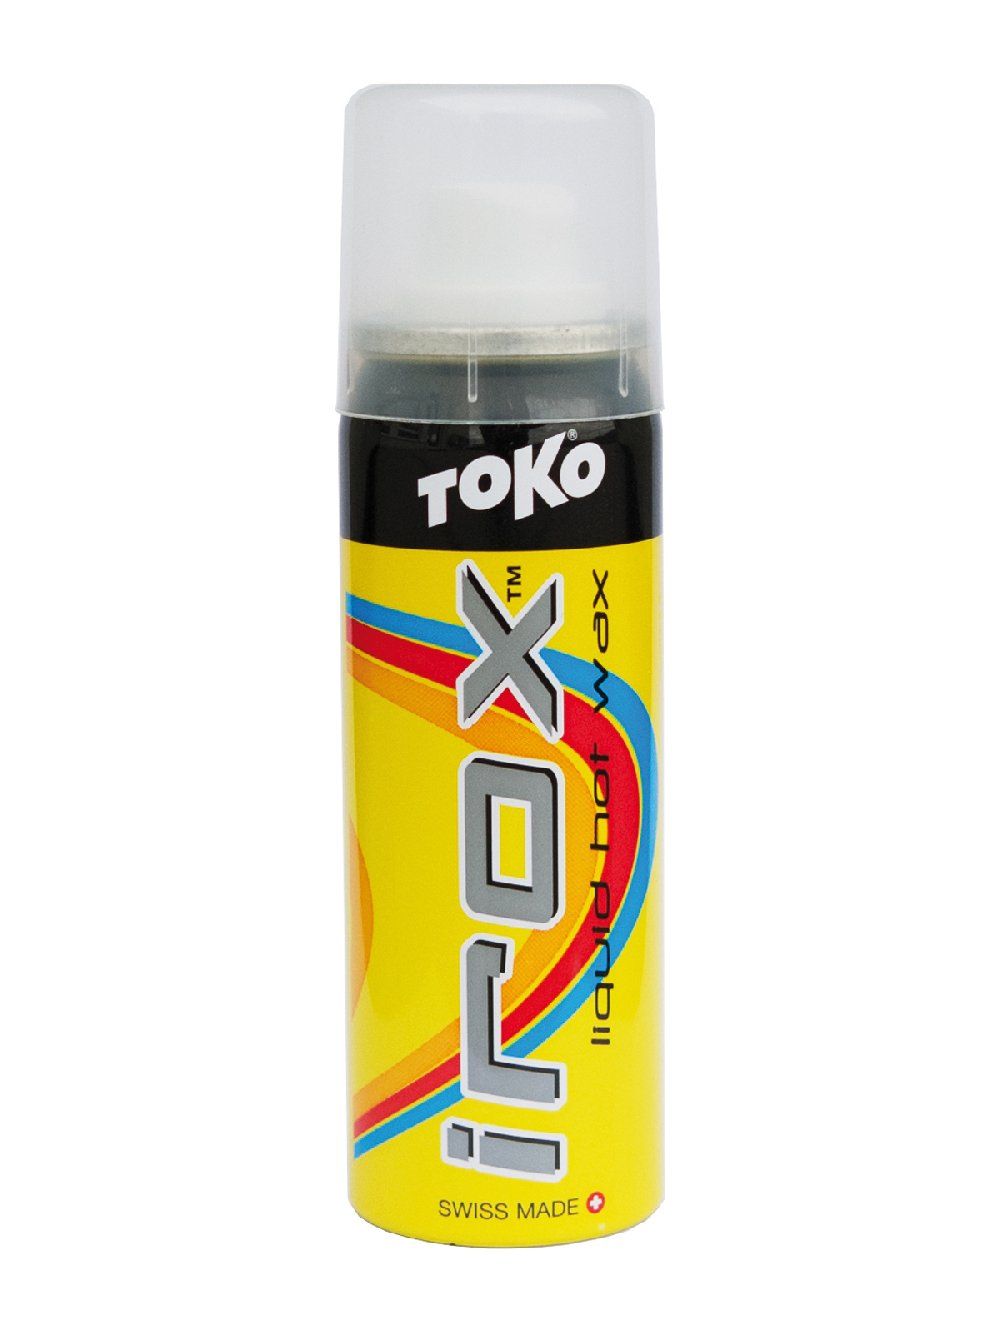 TOKO  Irox  0/-30, 250.-